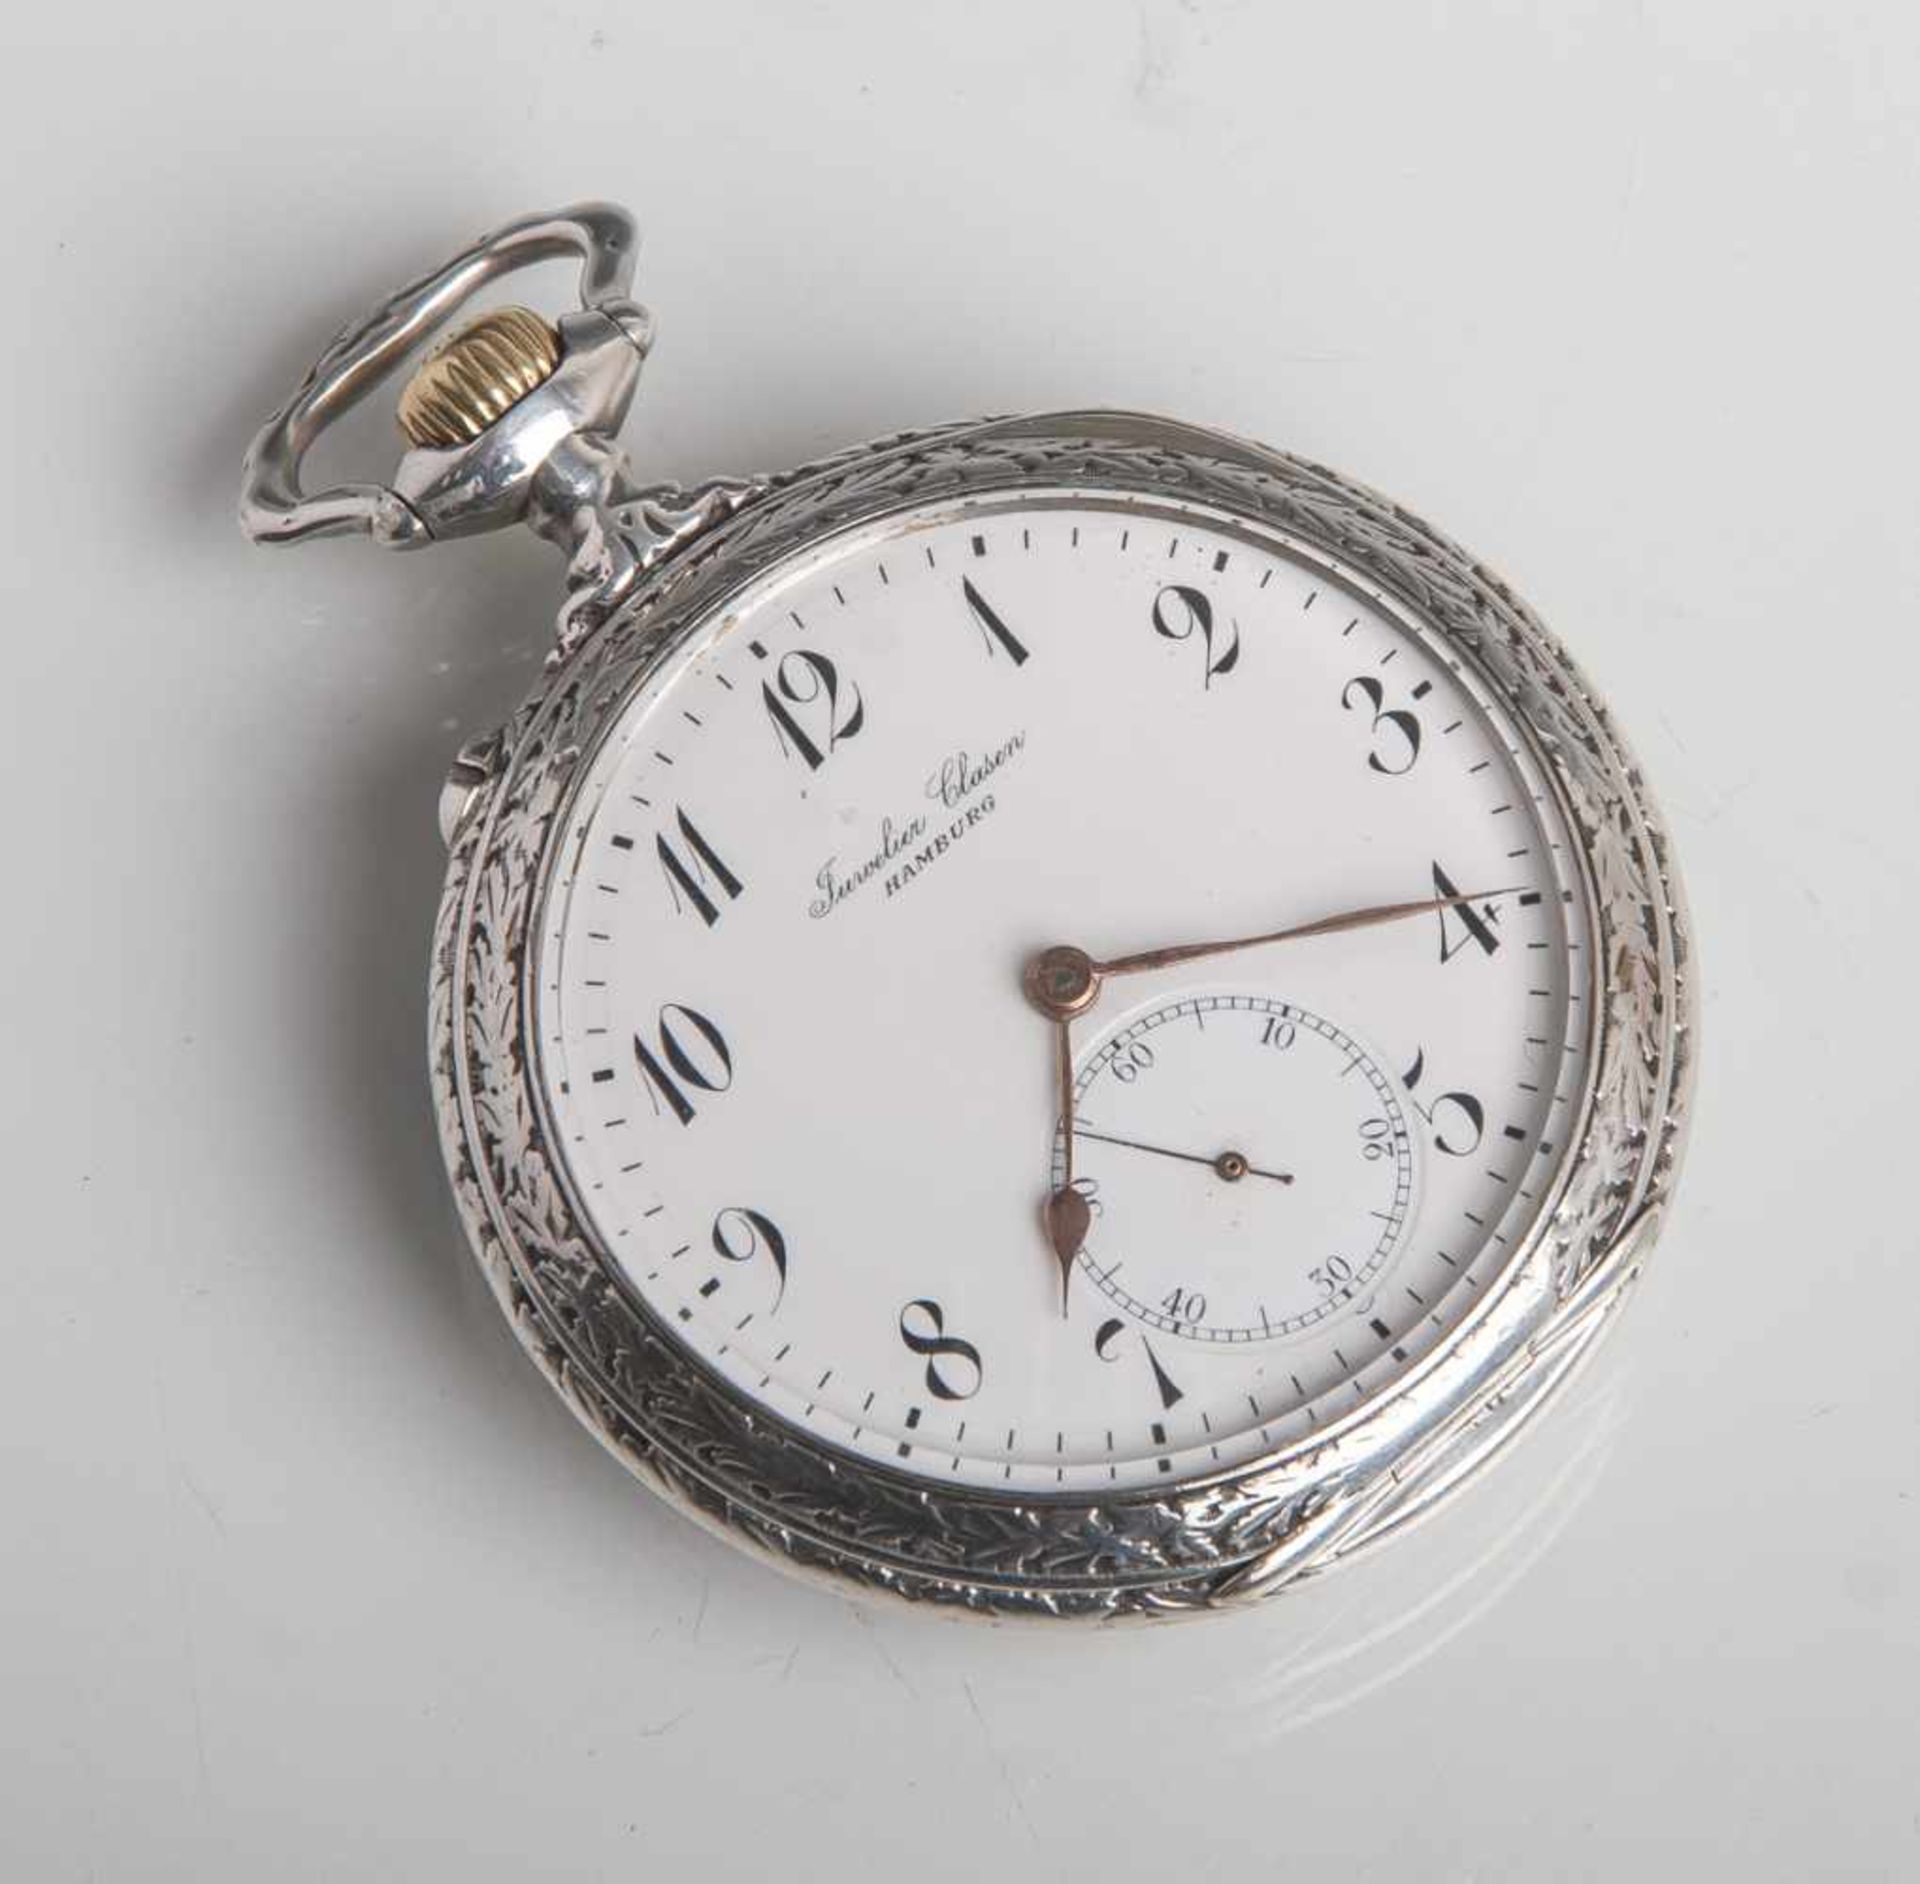 Herrentaschenuhr (International Watch Company), Silber 800, Ziffernblatt bez. JuwelierClasen